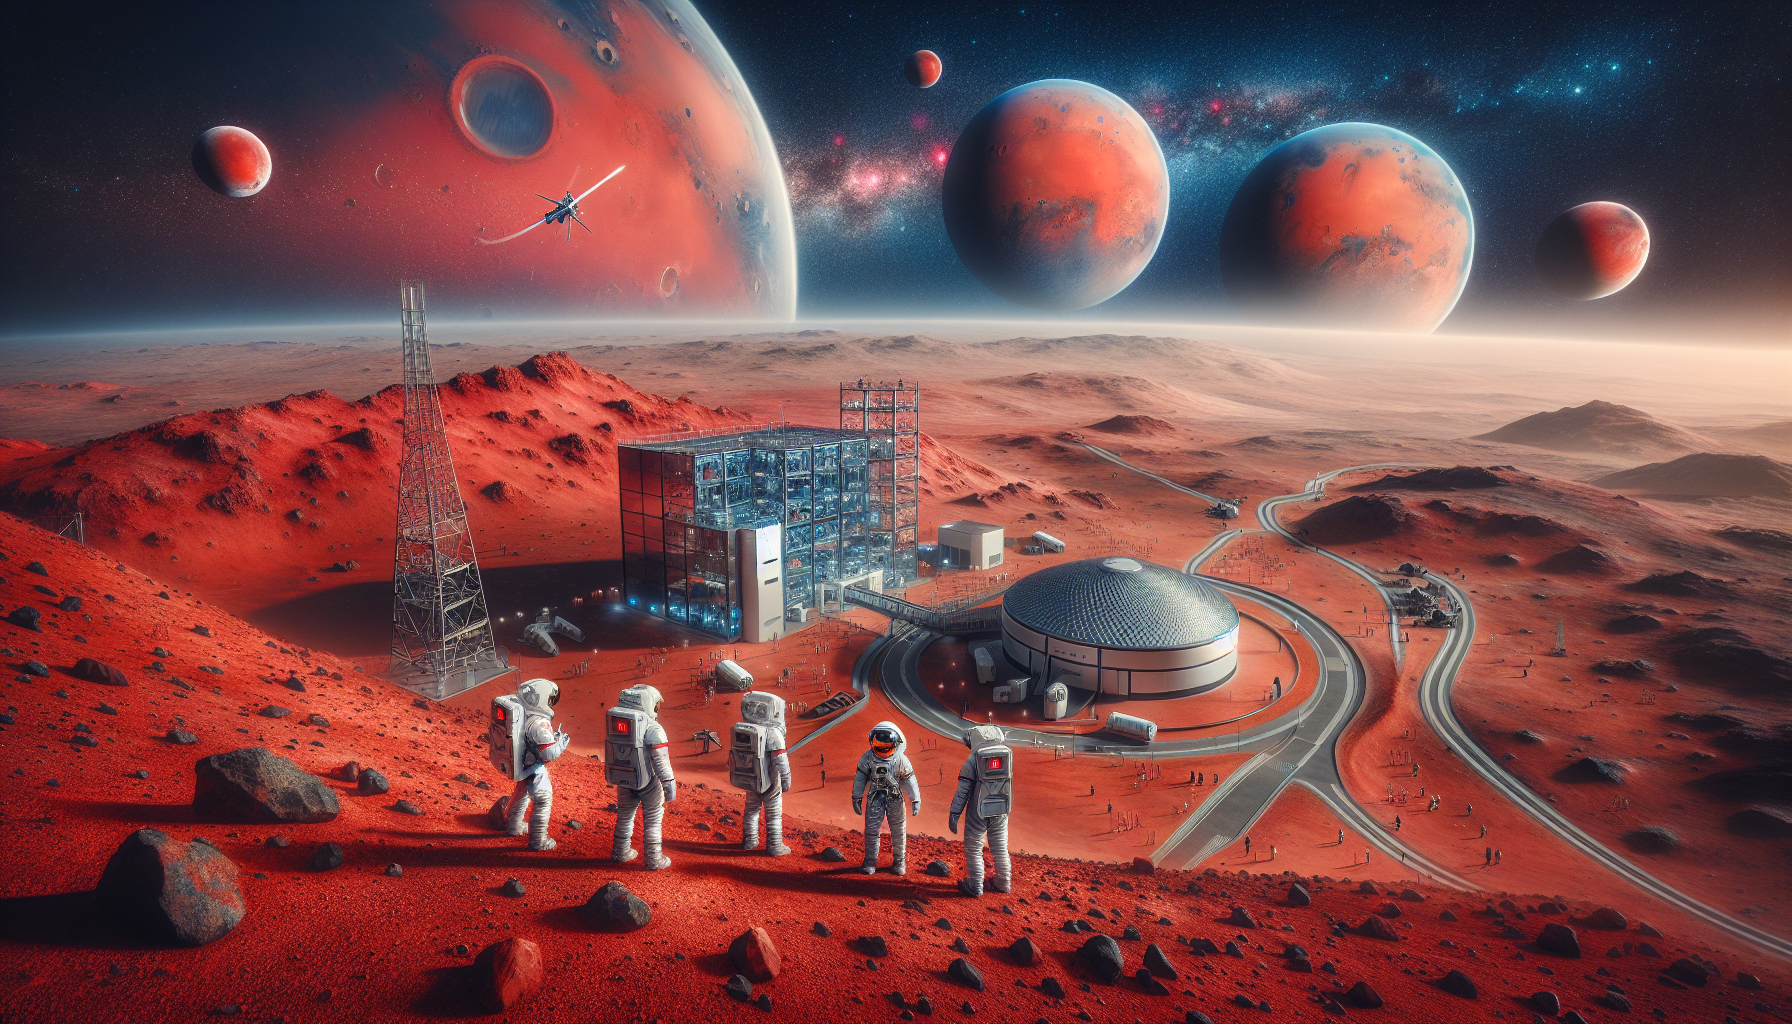 La NASA elige a los próximos 4 miembros de la tripulación para la misión simulada a Marte en Texas Nueva misión simulada a Marte de la NASA en Texas: seleccionan a 4 astronautas